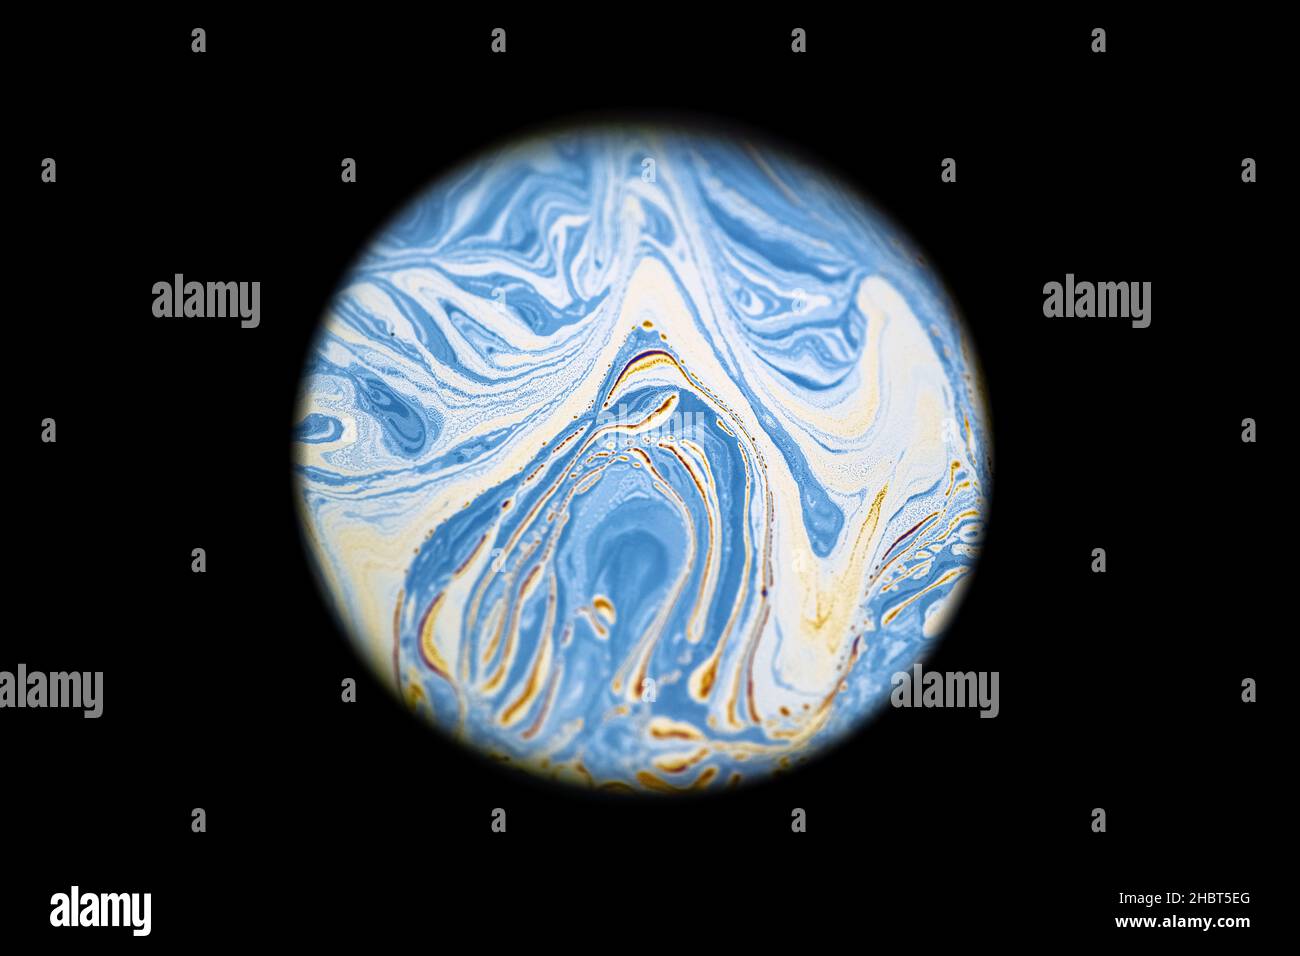 Multicolore psichedelico astratto rotondo pianeta blu nell'universo. Primo piano bolla di sapone come un pianeta alieno su sfondo scuro Foto Stock